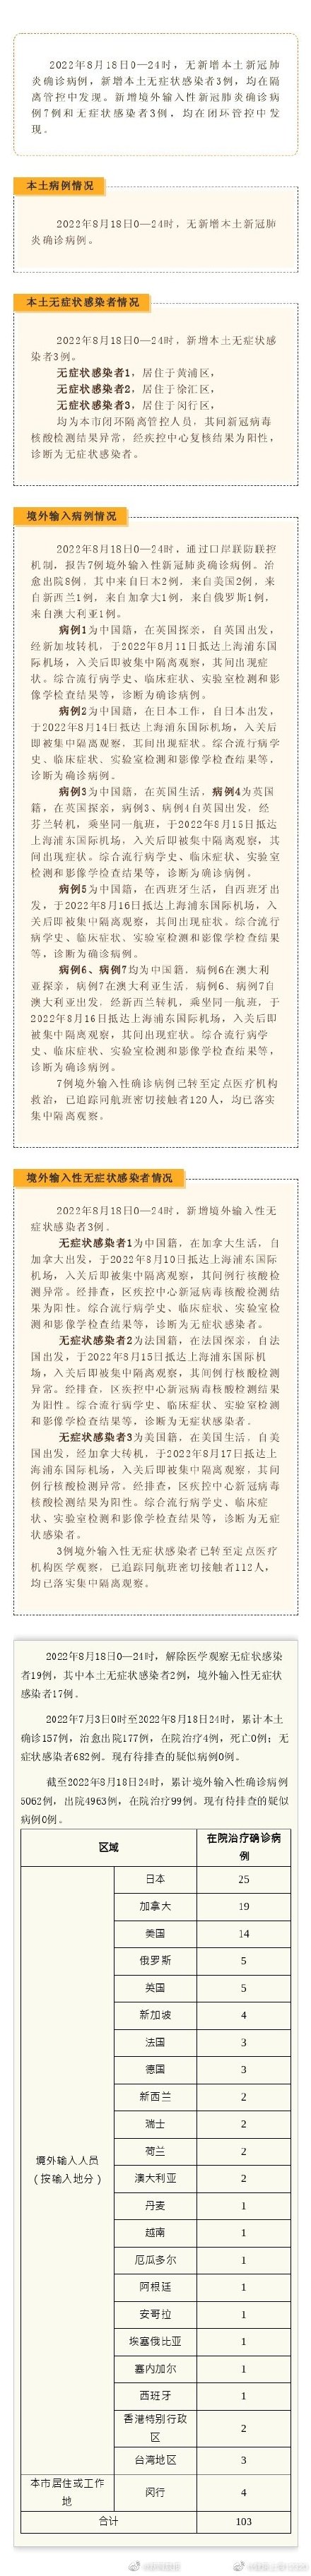 上海昨日无新增本土确诊病例、新增本土无症状感染者3例